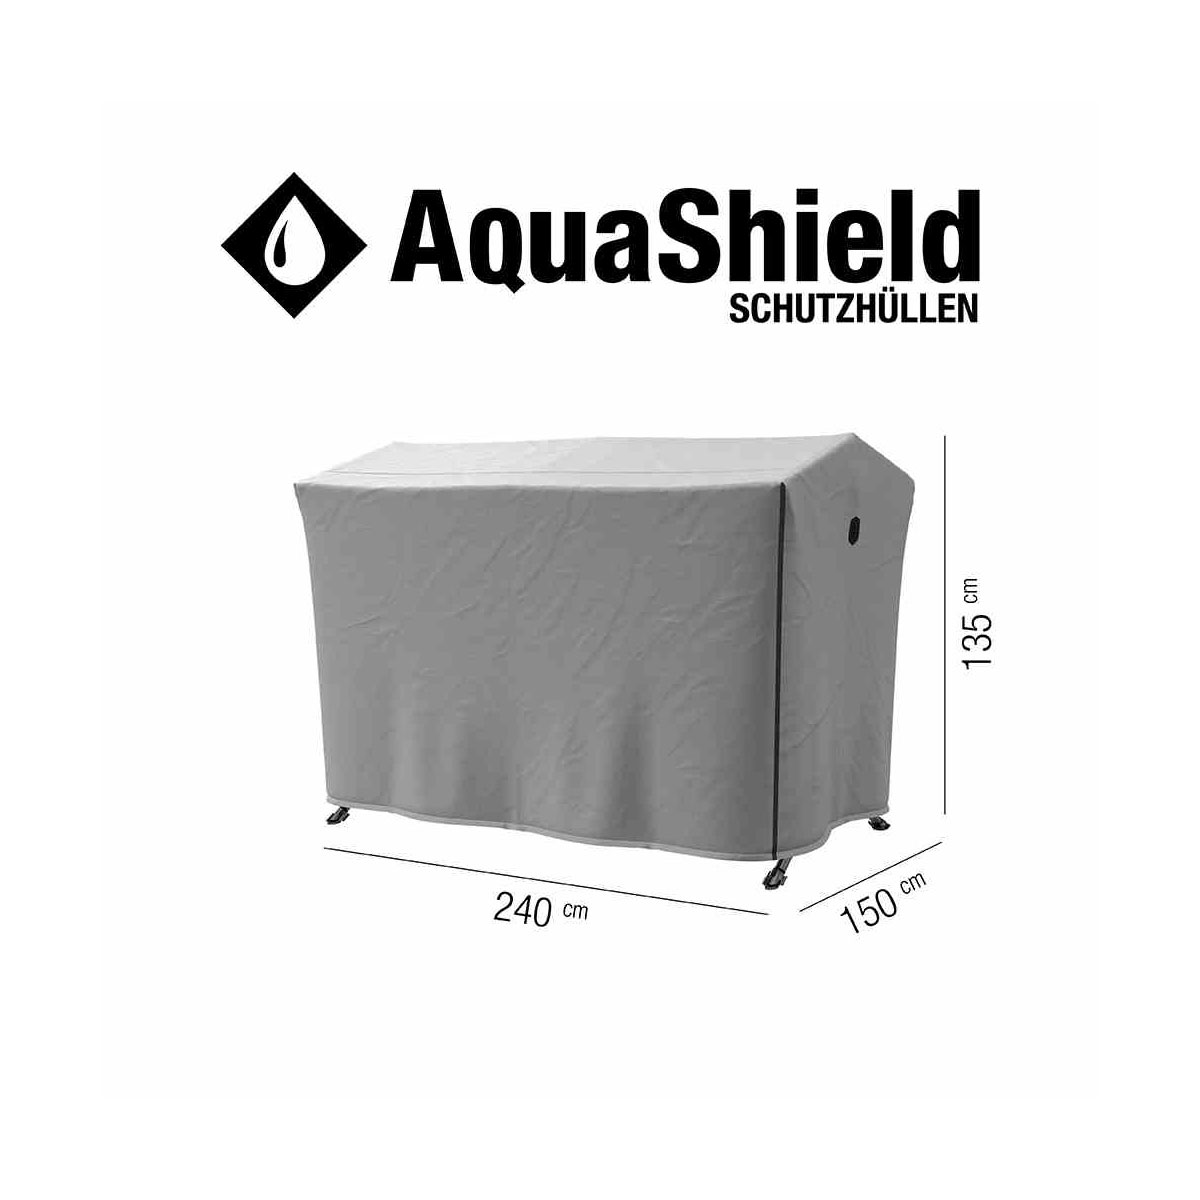 Schutzhülle „AquaShield“ für Schaukel, 240x150x135 cm, hellgrau